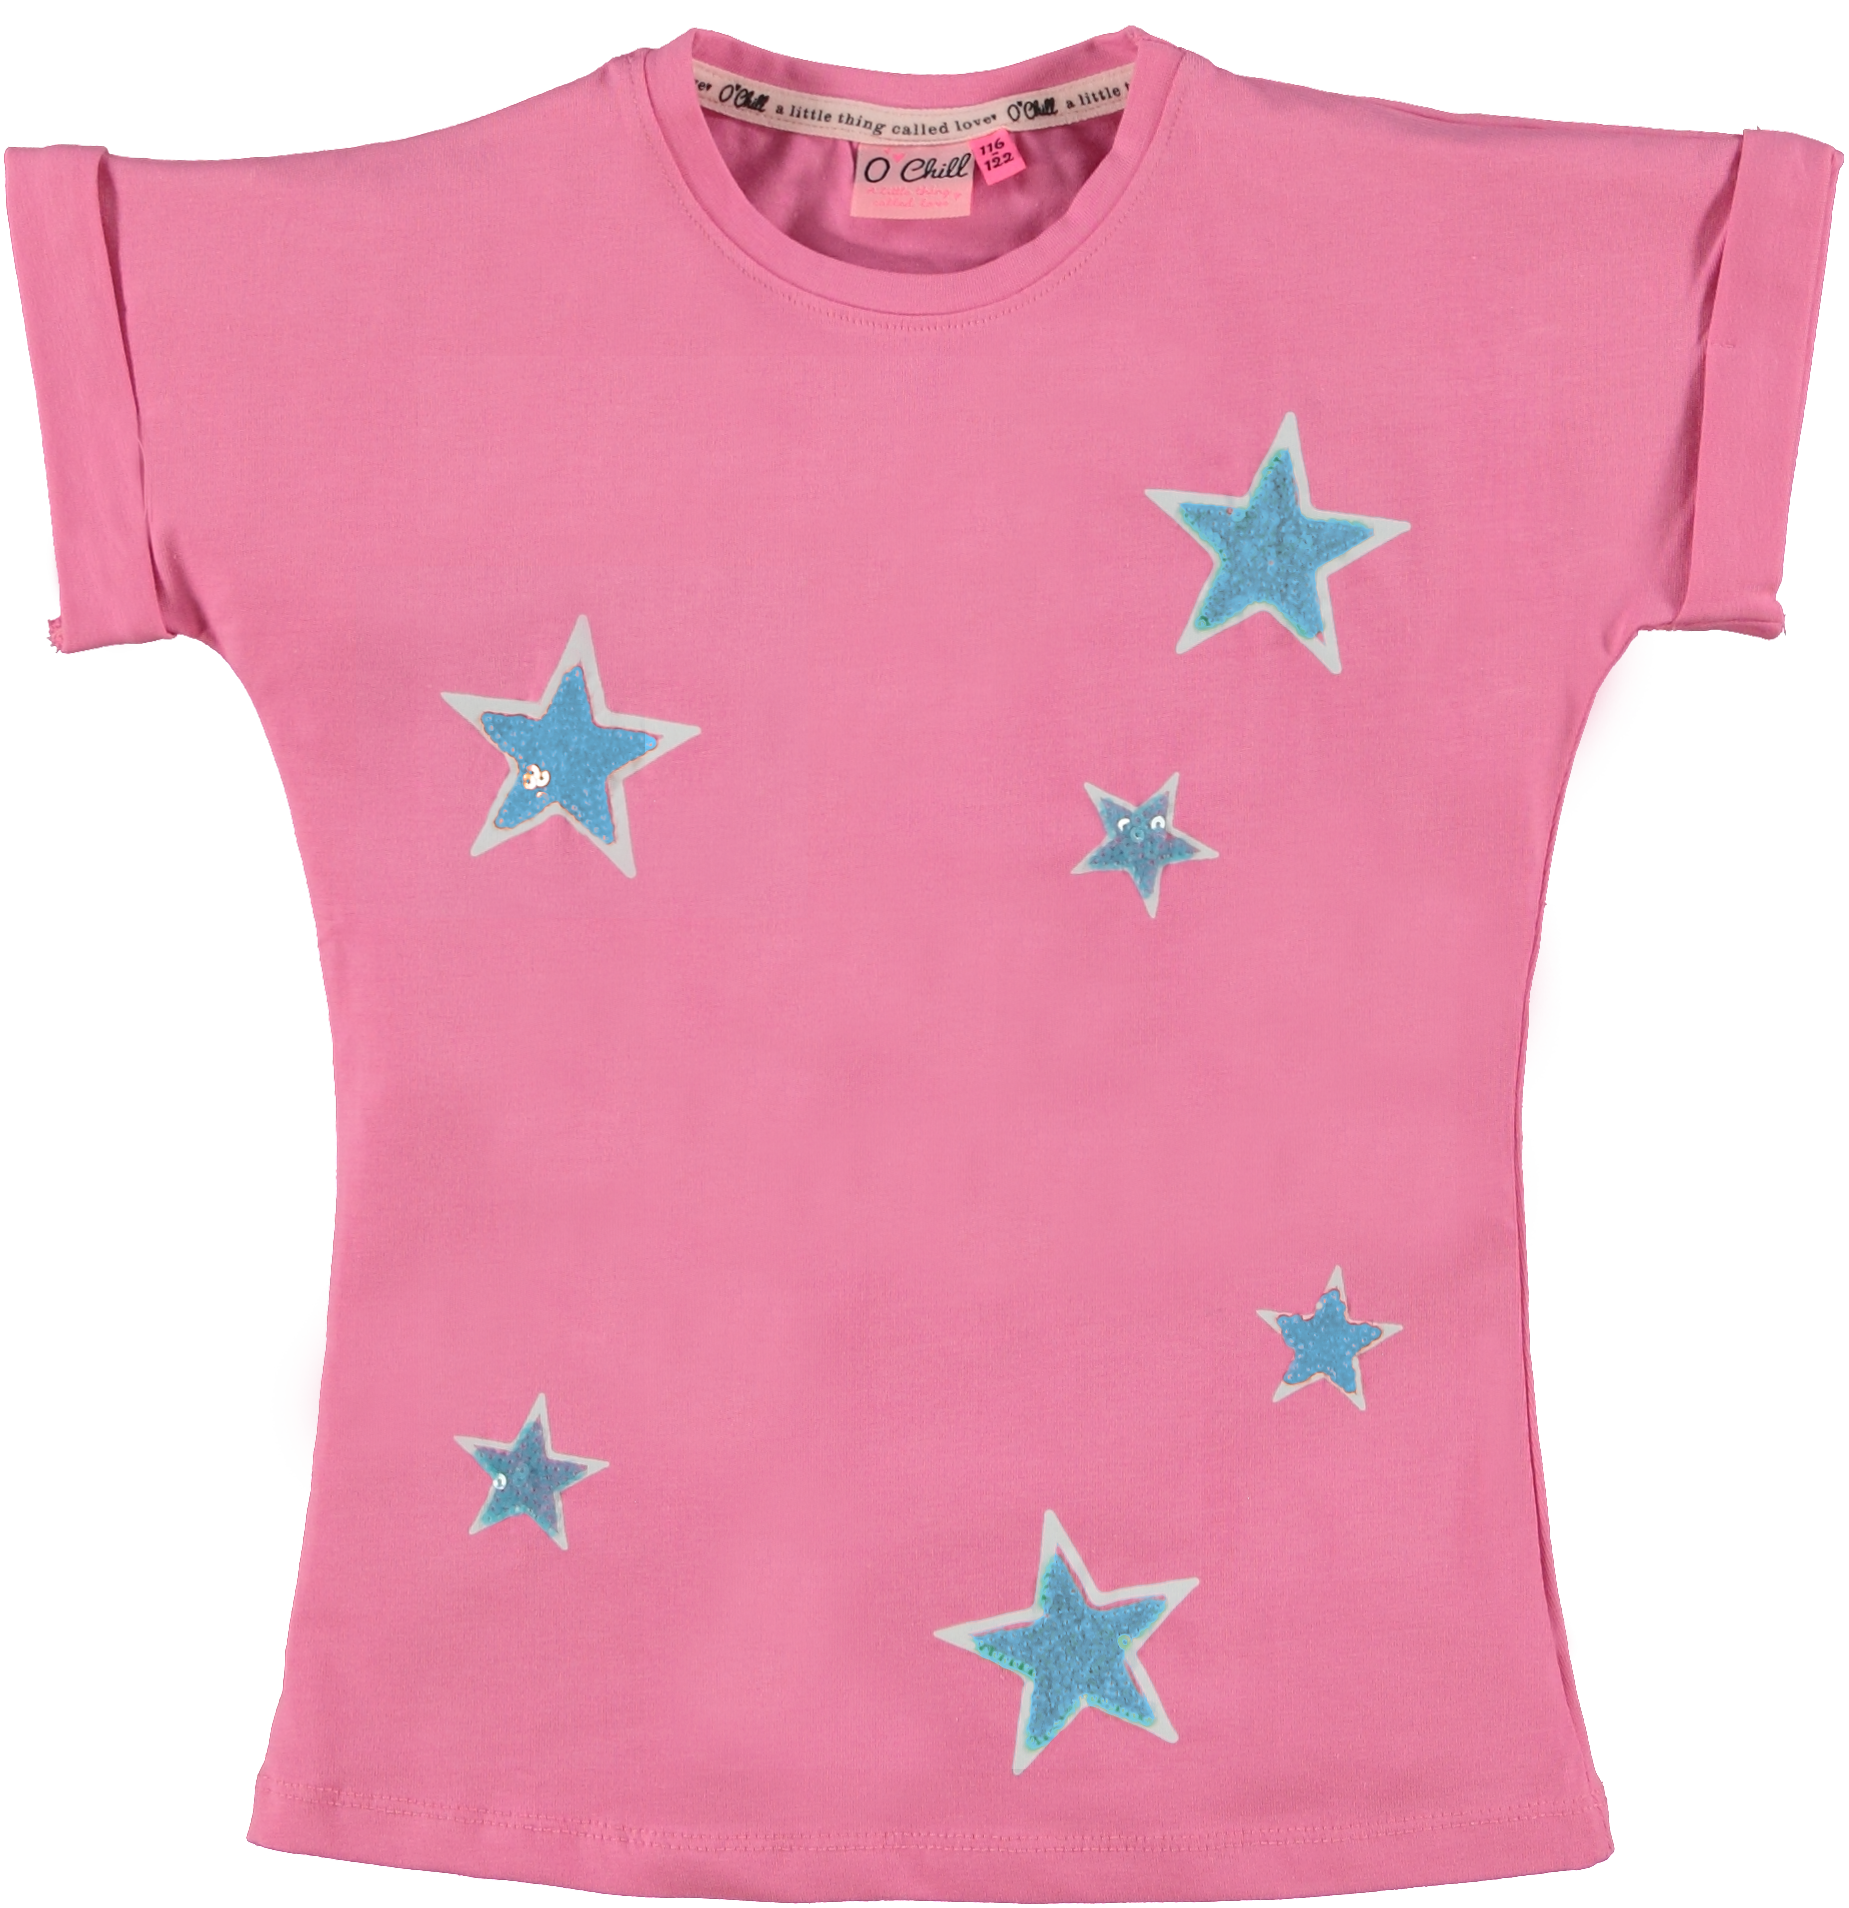 Meisjes shirt - Bodi - Roze